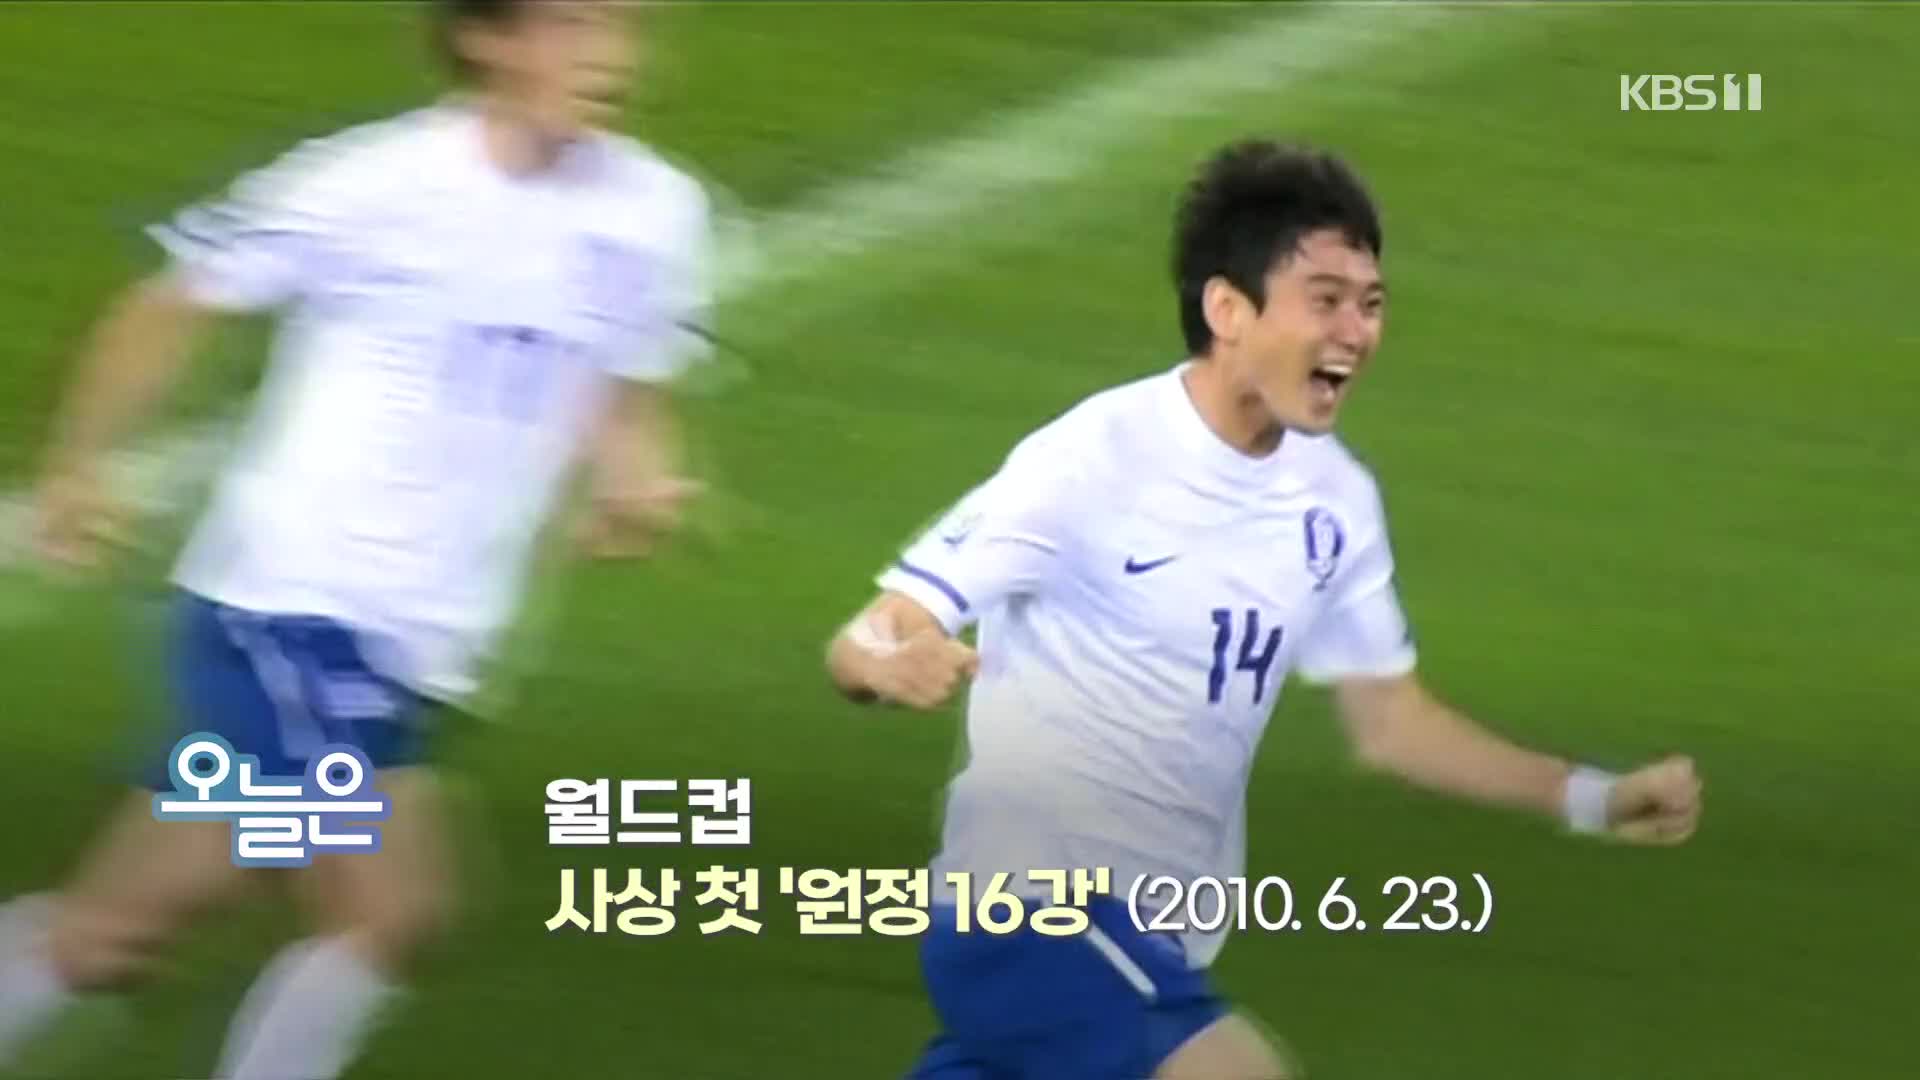 [오늘은] 월드컵 사상 첫 ‘원정 16강’ (2010. 6. 23.)